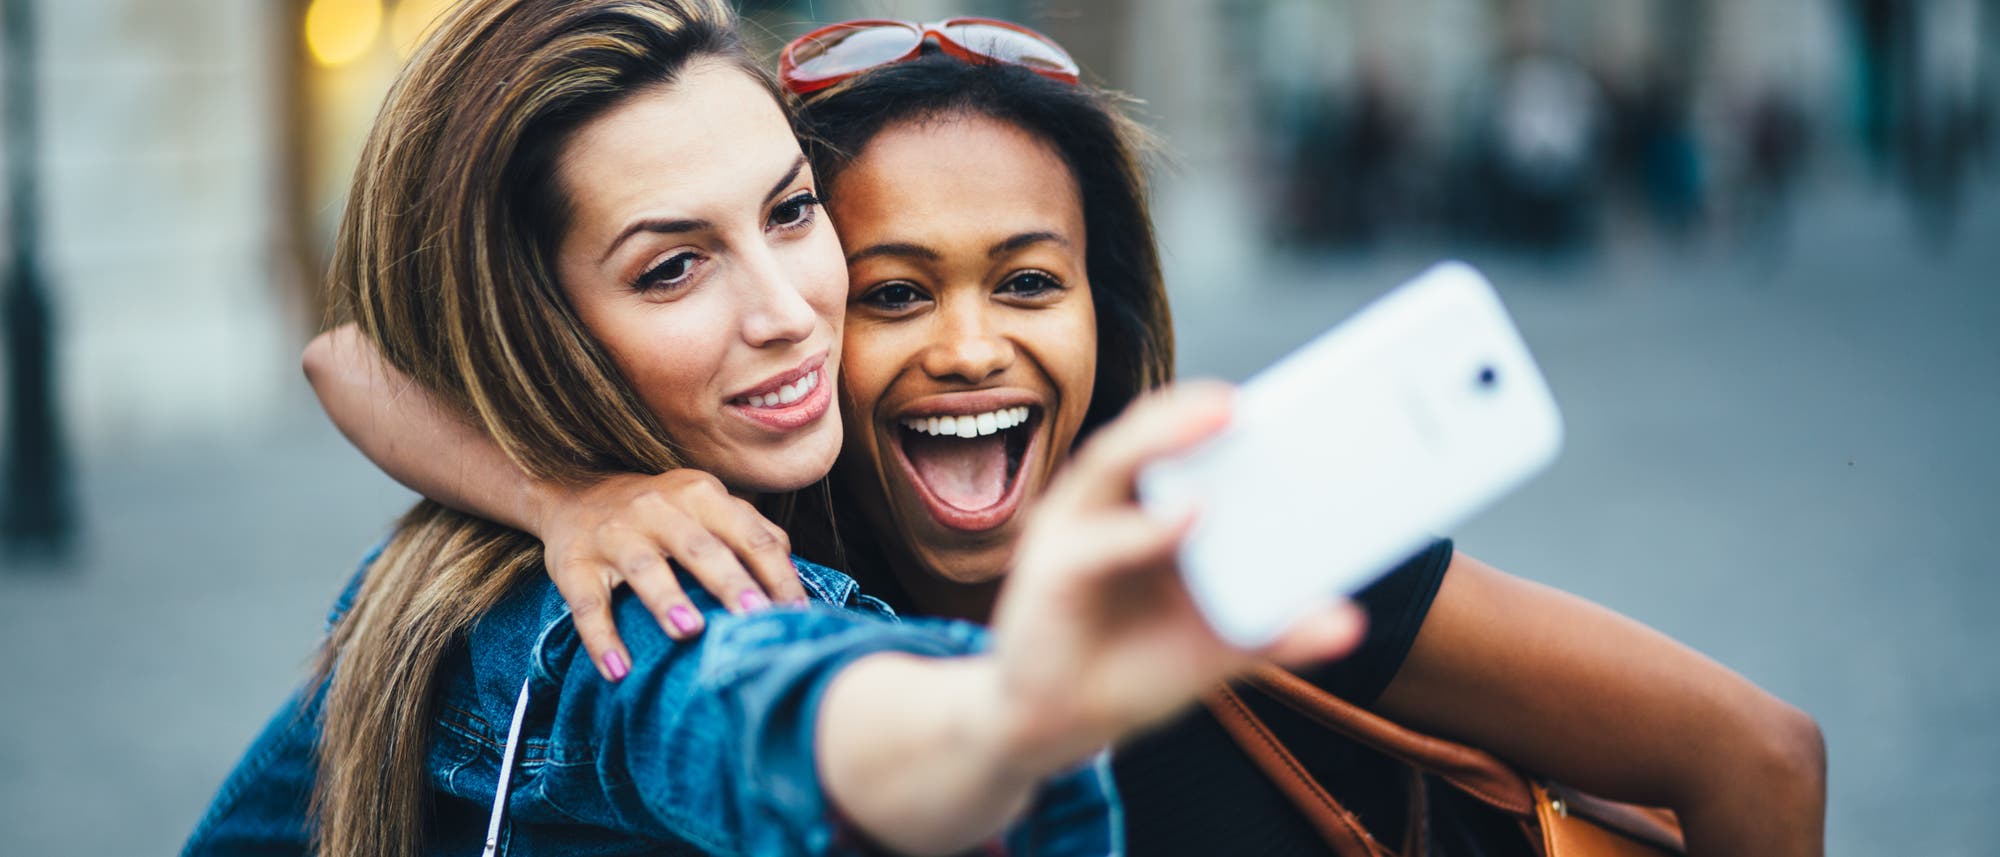 Zwei junge Frauen machen ein Selfie an einem öffentlichen Ort.